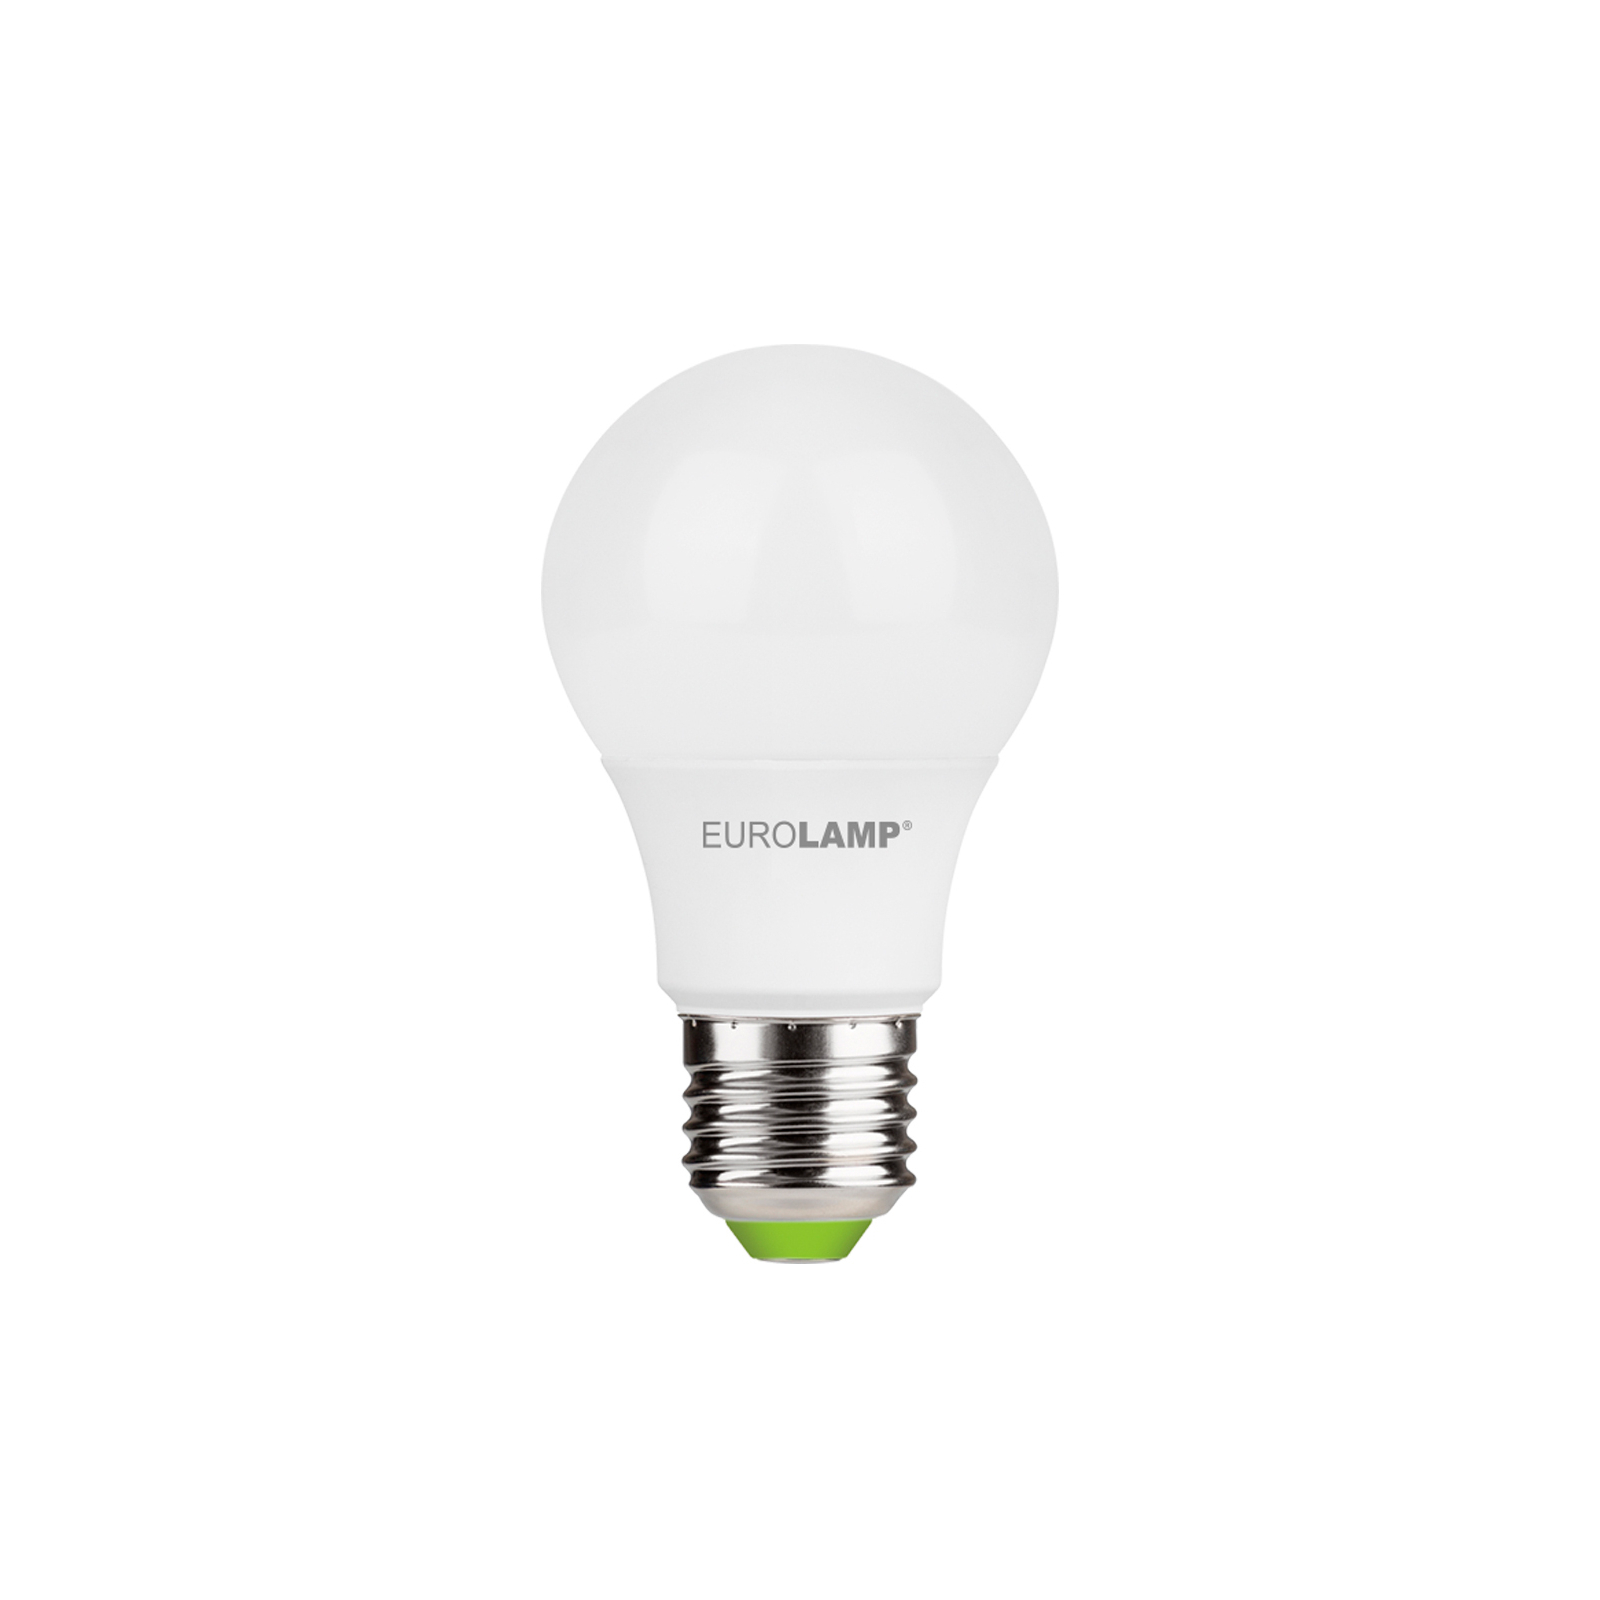 Лампочка Eurolamp LED A60 7W E27 4000K 220V акция 1+1 (MLP-LED-A60-07274(E)) изображение 2